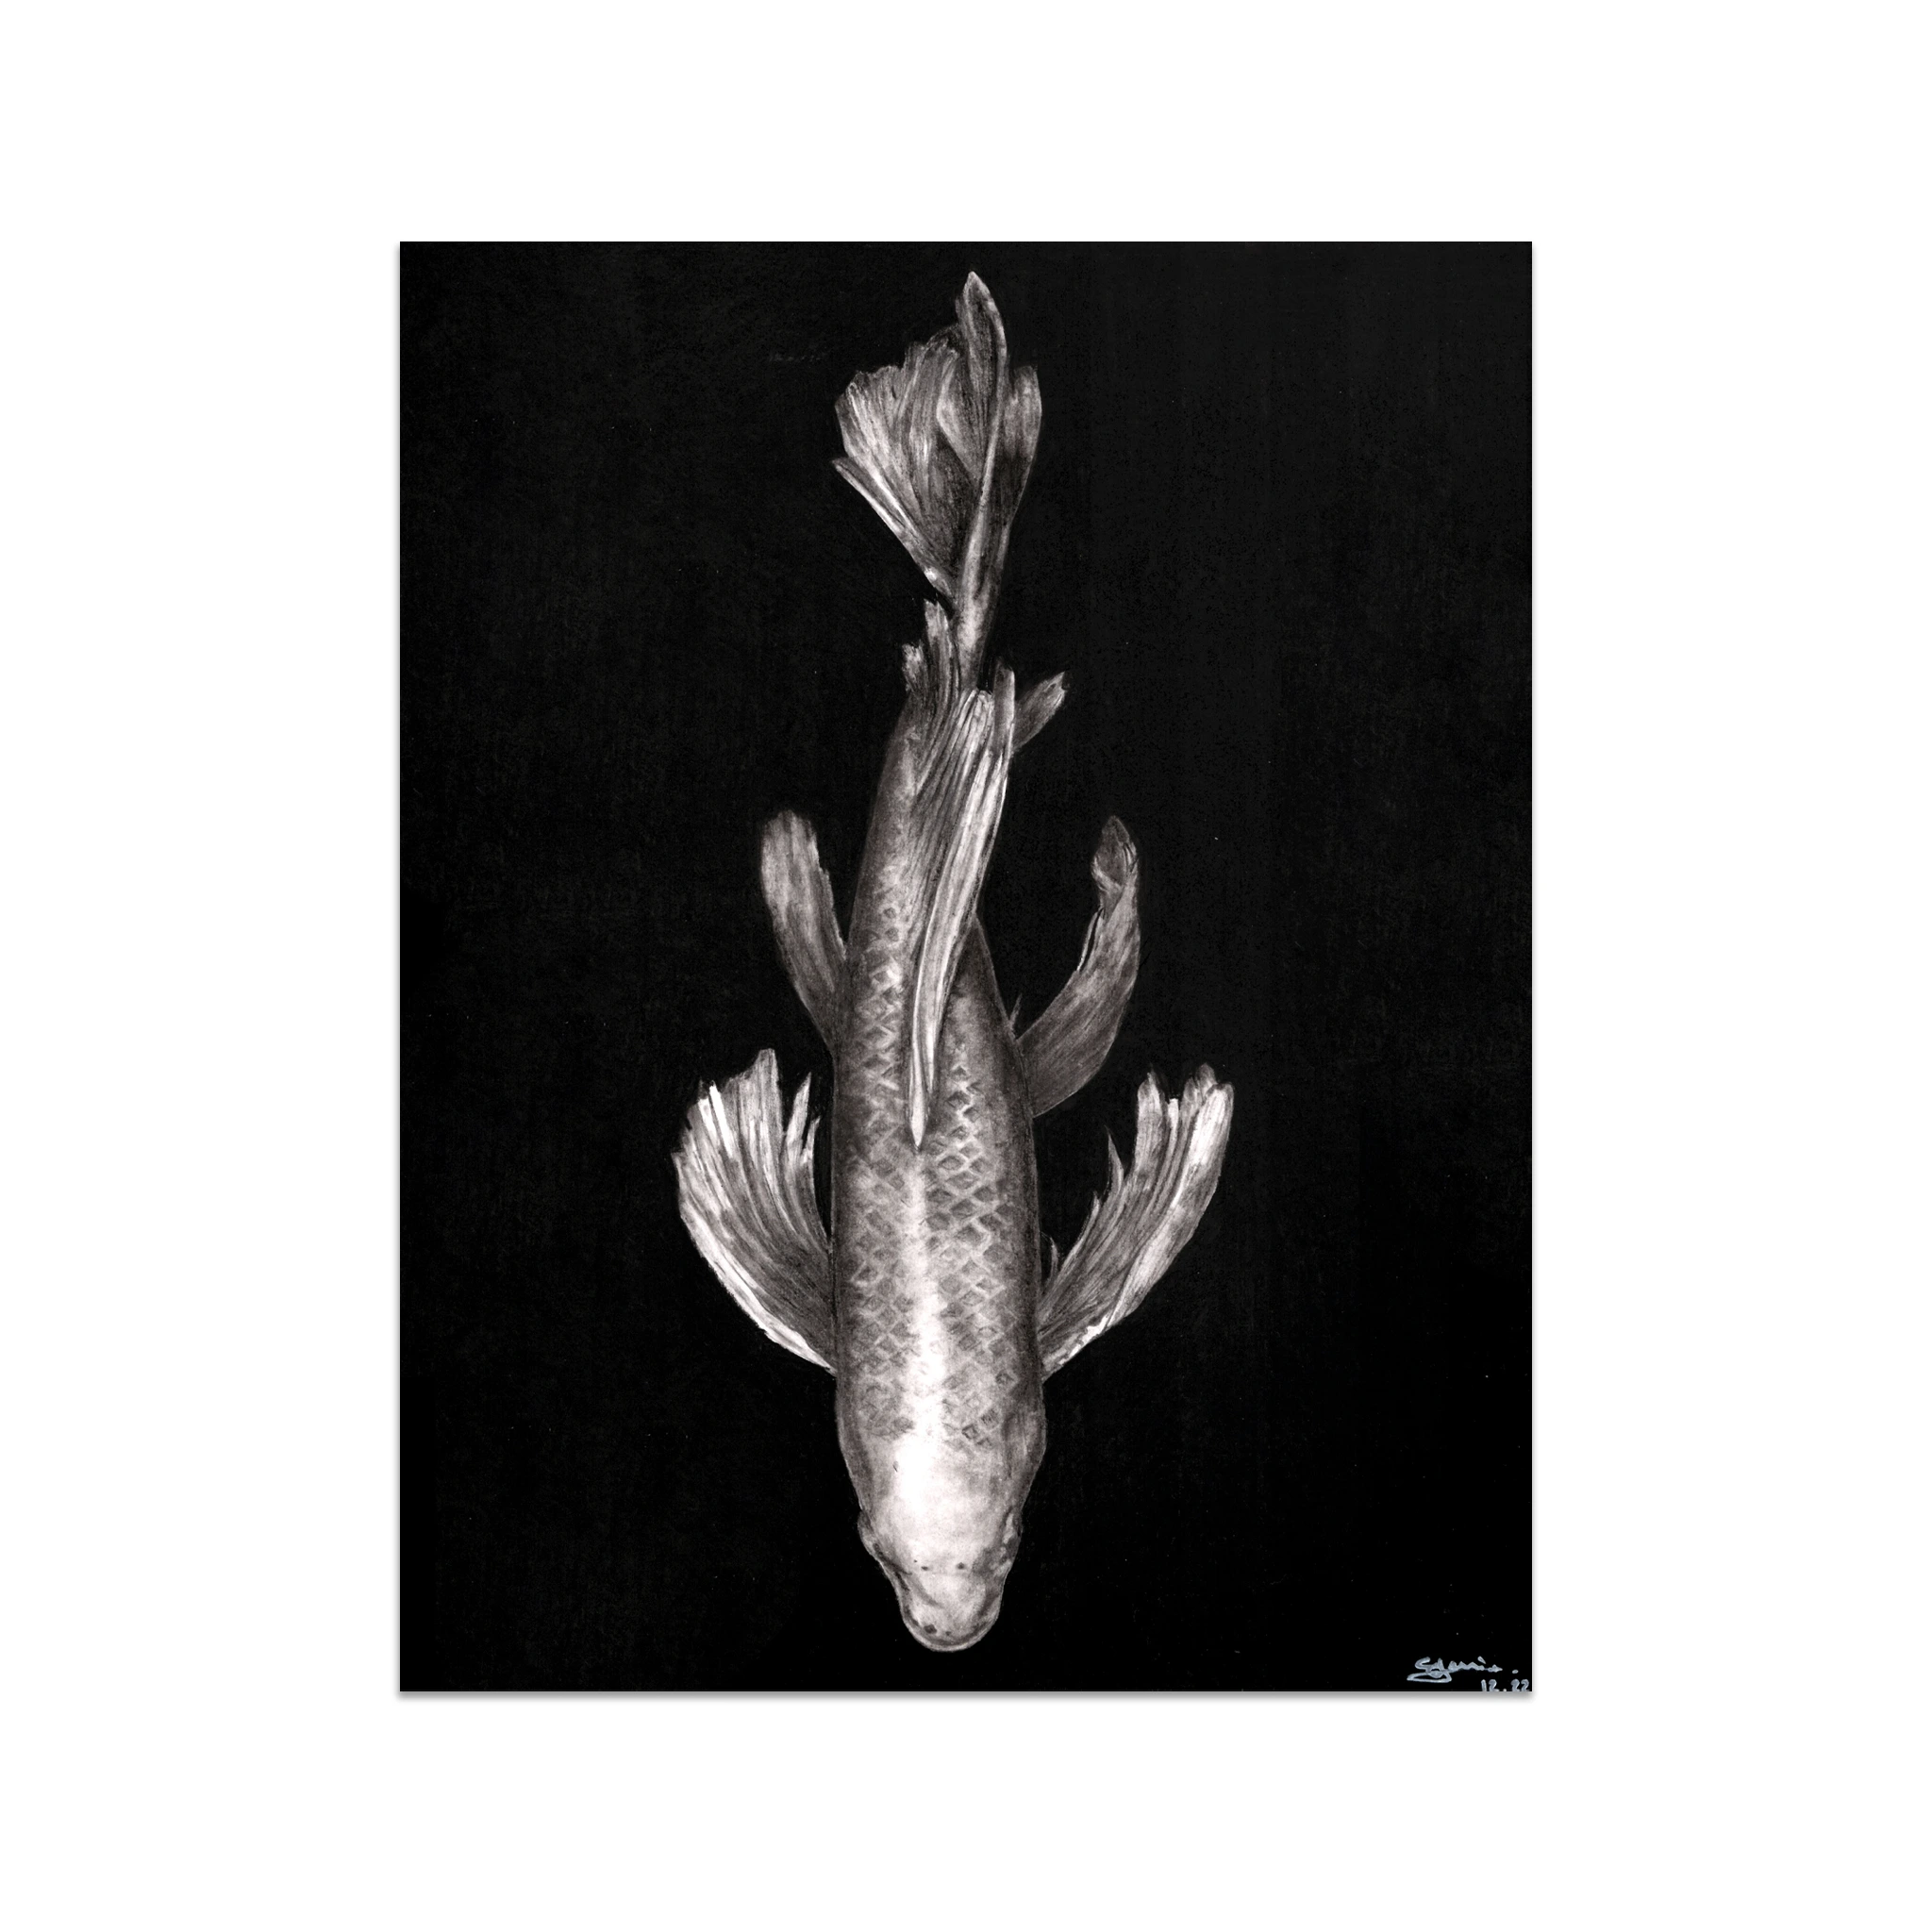 Portrait réalise noir et blanc d'une carpe koï nageant paisiblement dans l'eau, dessiné à la main en utilisant du graphite, du fusain et de la pierre noire. Les textures de la peau de la carpe koï est mises en évidence avec des effets d'ombres et de lumière.